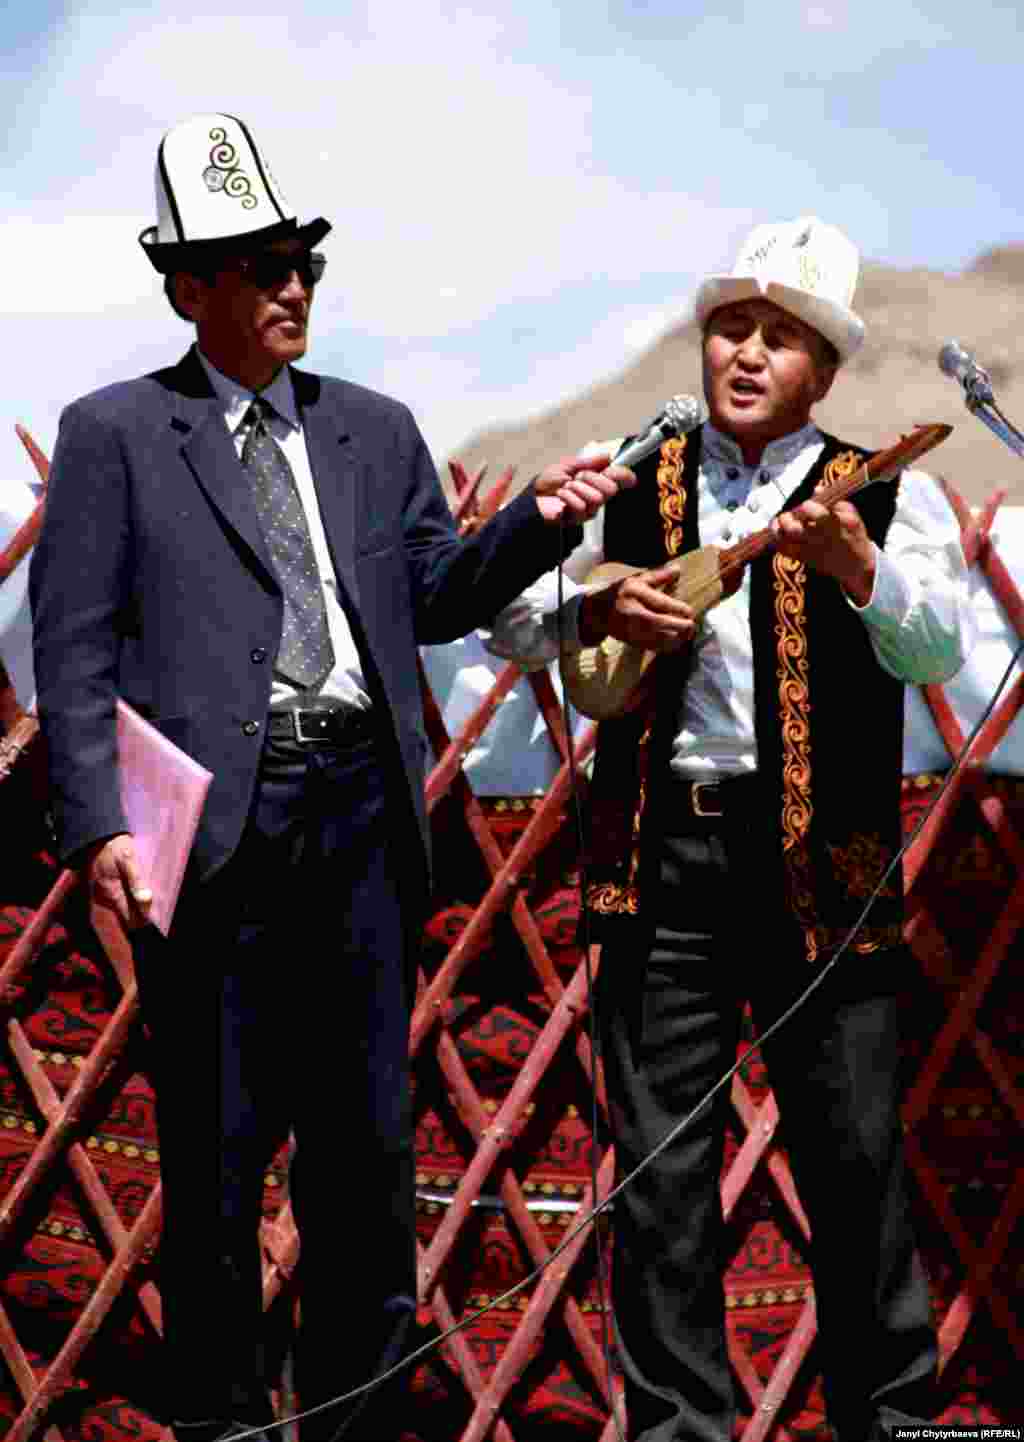 Ыраң-Көл айылынын комузчу, ырчысы Мамасали Сатаров. Мамасали жетектеген &quot;Беш мырза&quot; тобу бүткүл Мургаб жергесинде жакшы таанымал. Мырзалар мектеп окуучуларына кыргыздын ыр-күүлөрүн үйрөтүшөт.